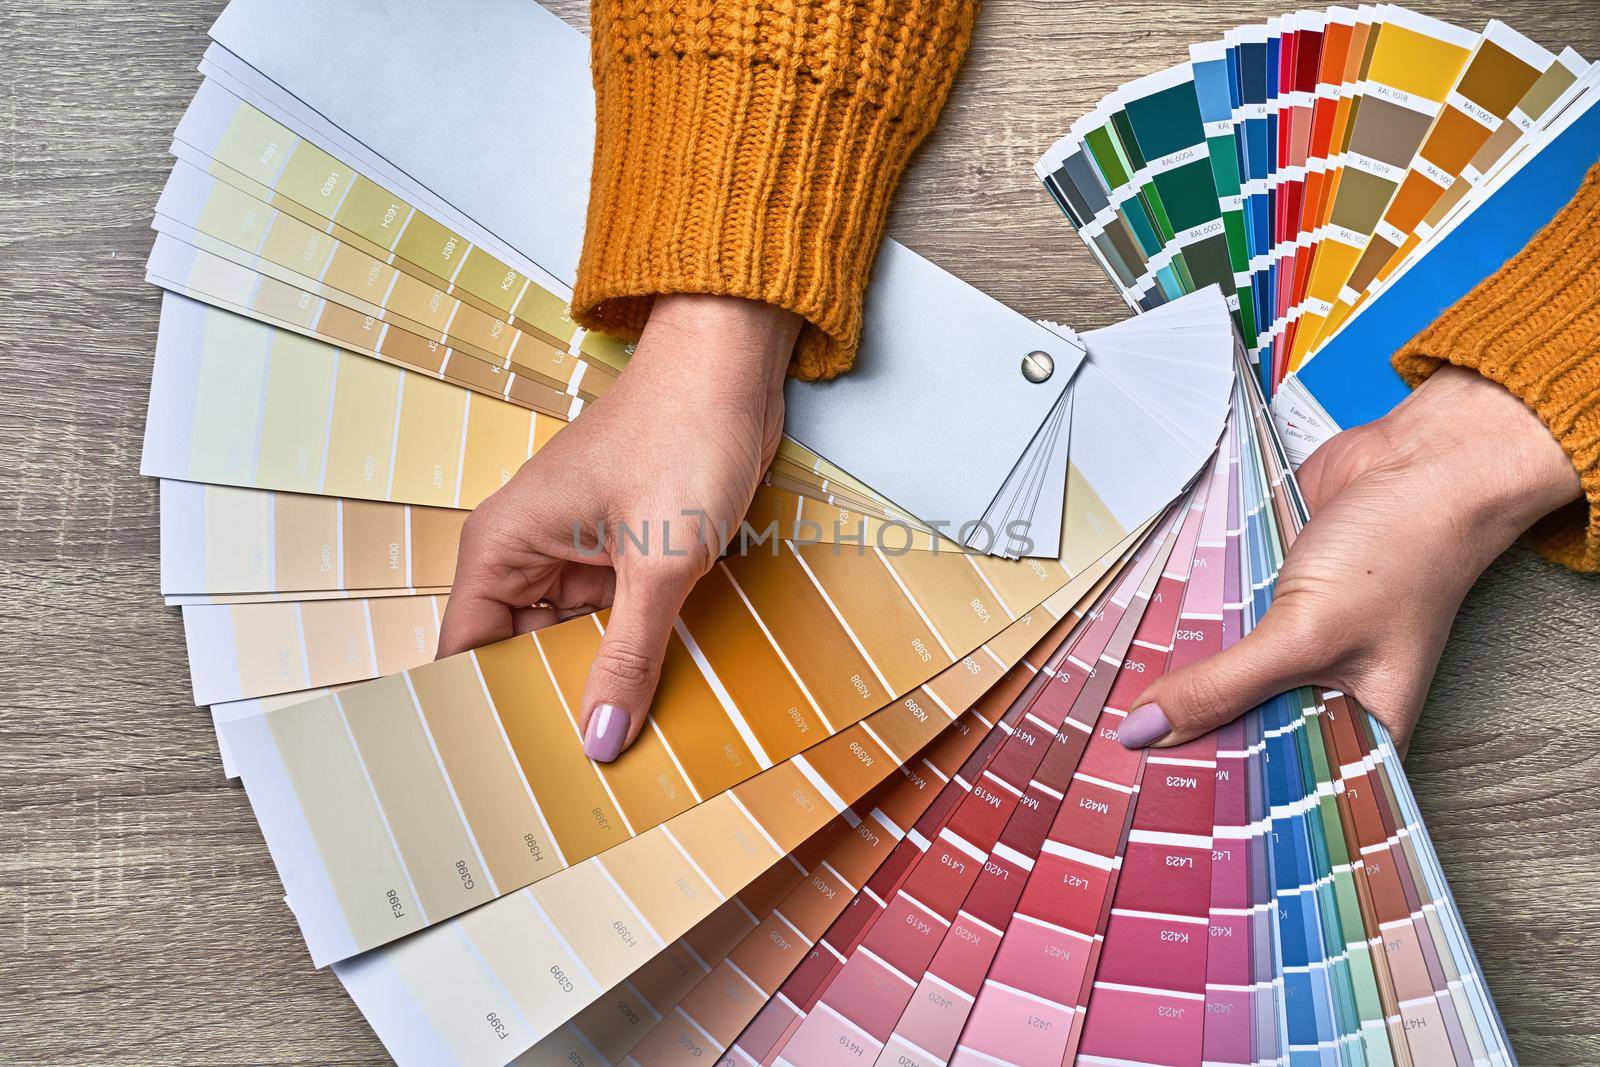 Color wheel palette for choosing paint tone.